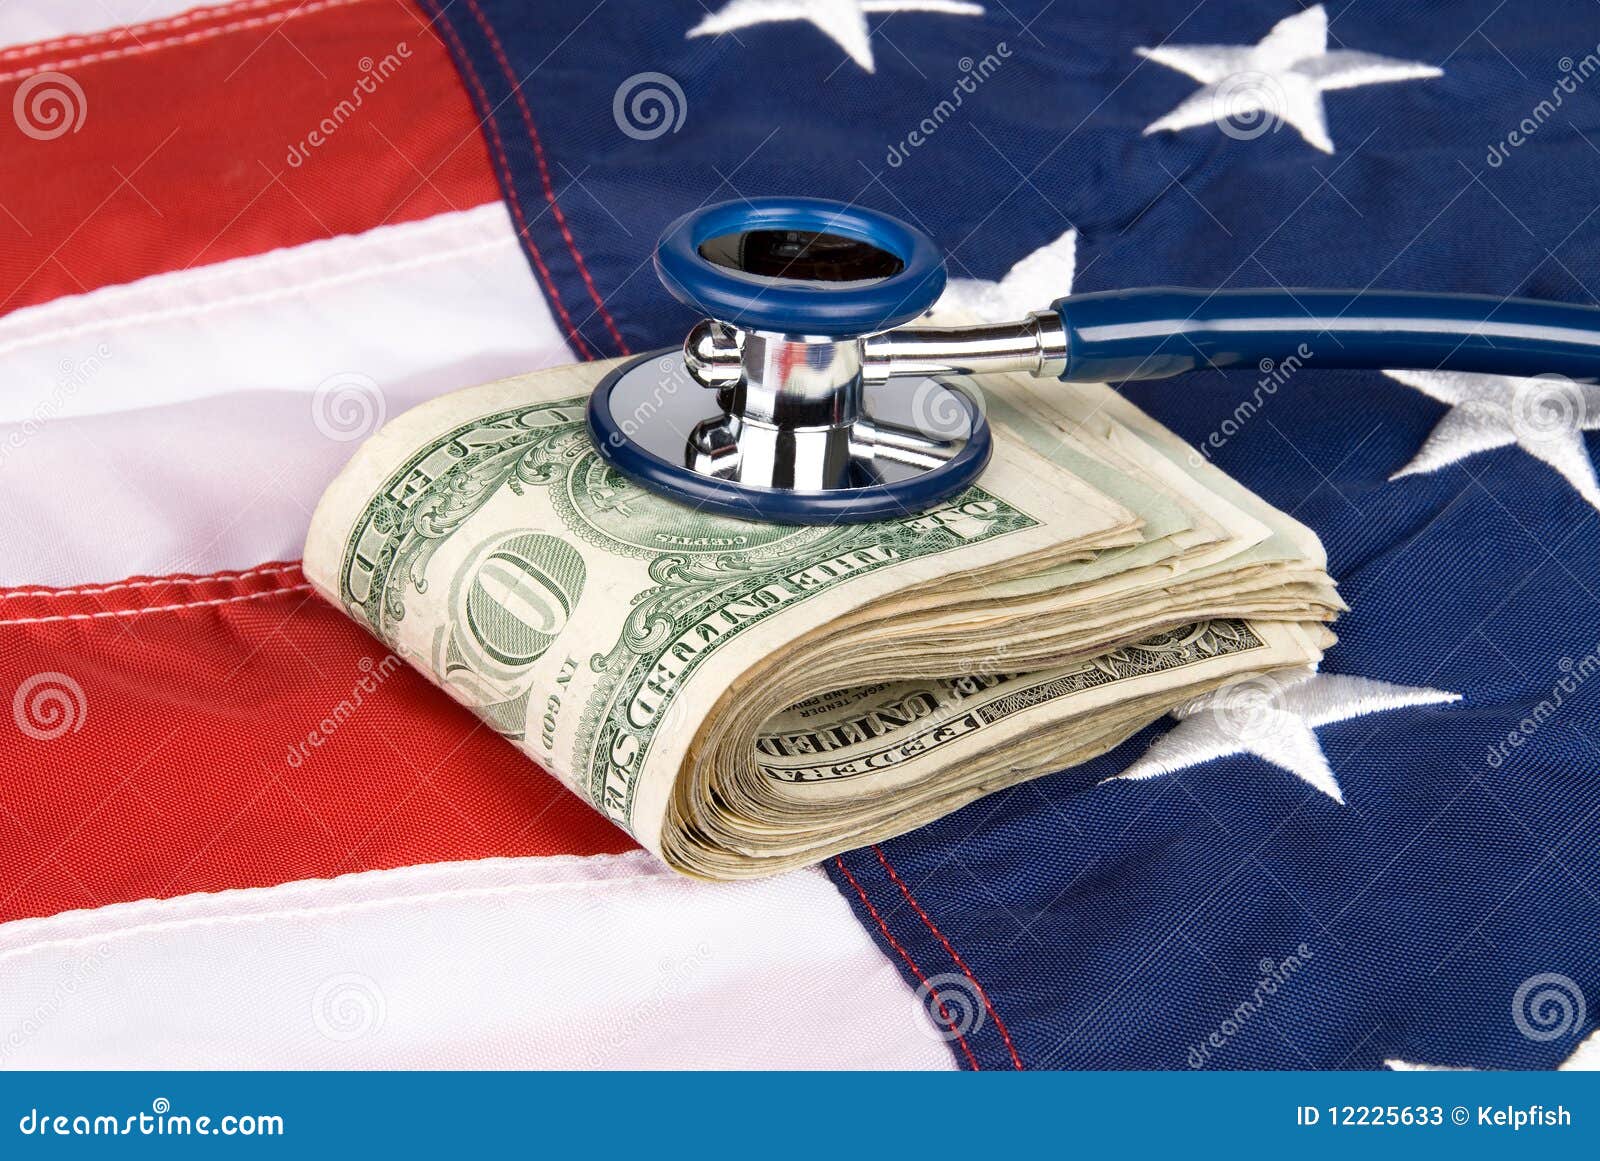 Amerikaanse vlag met stapel van contant geld en stethoscoop. Een stapel die van contant geld op een Amerikaanse vlag met een stethoscoop op het geld, om het even wat van medische kosten concludeert aan economische gezondheid en financiële stabiliteit.